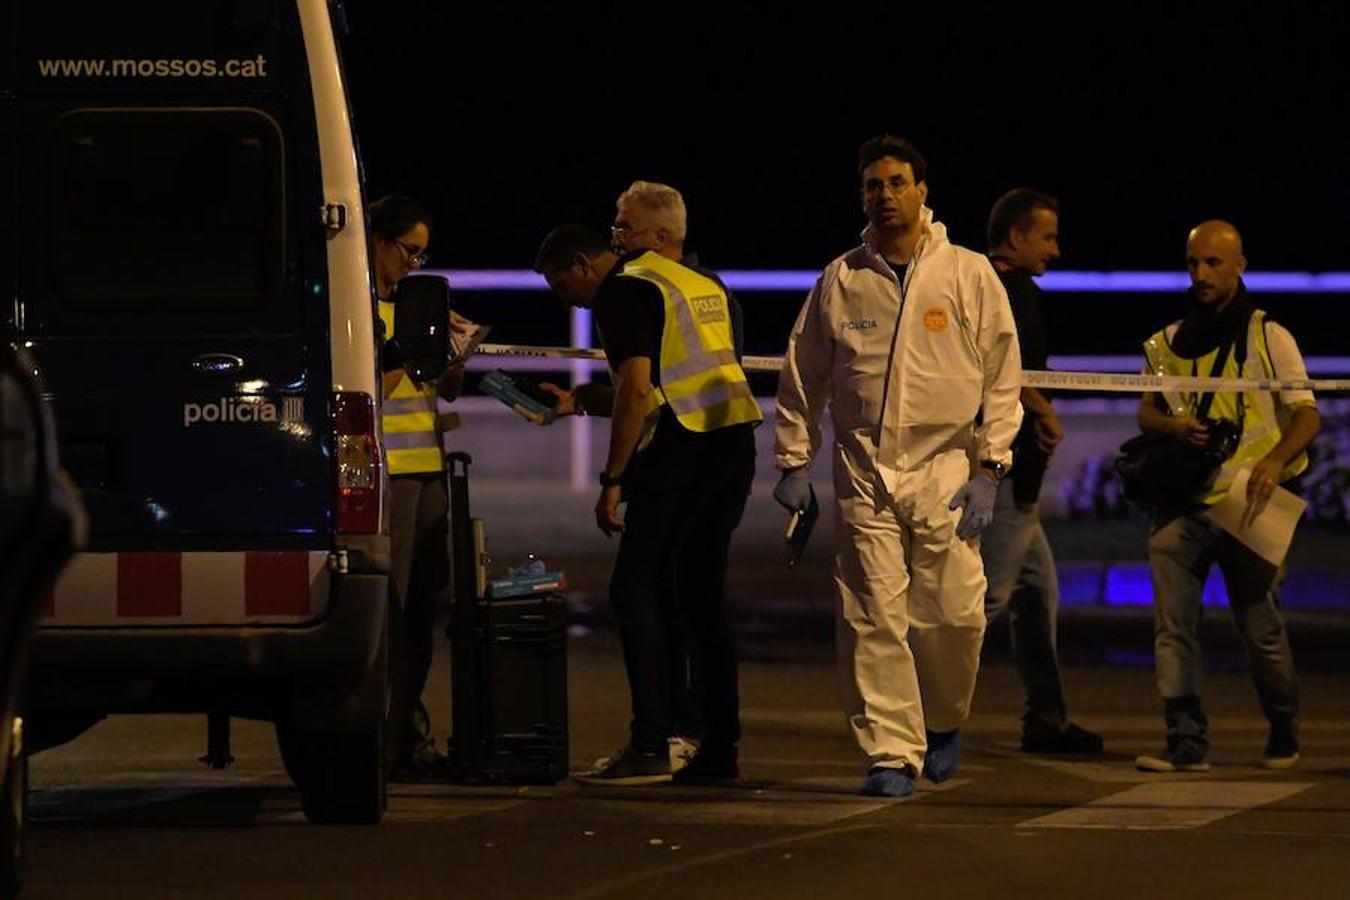 Abatidos cinco terroristas tras cometer un atentado en Cambrils